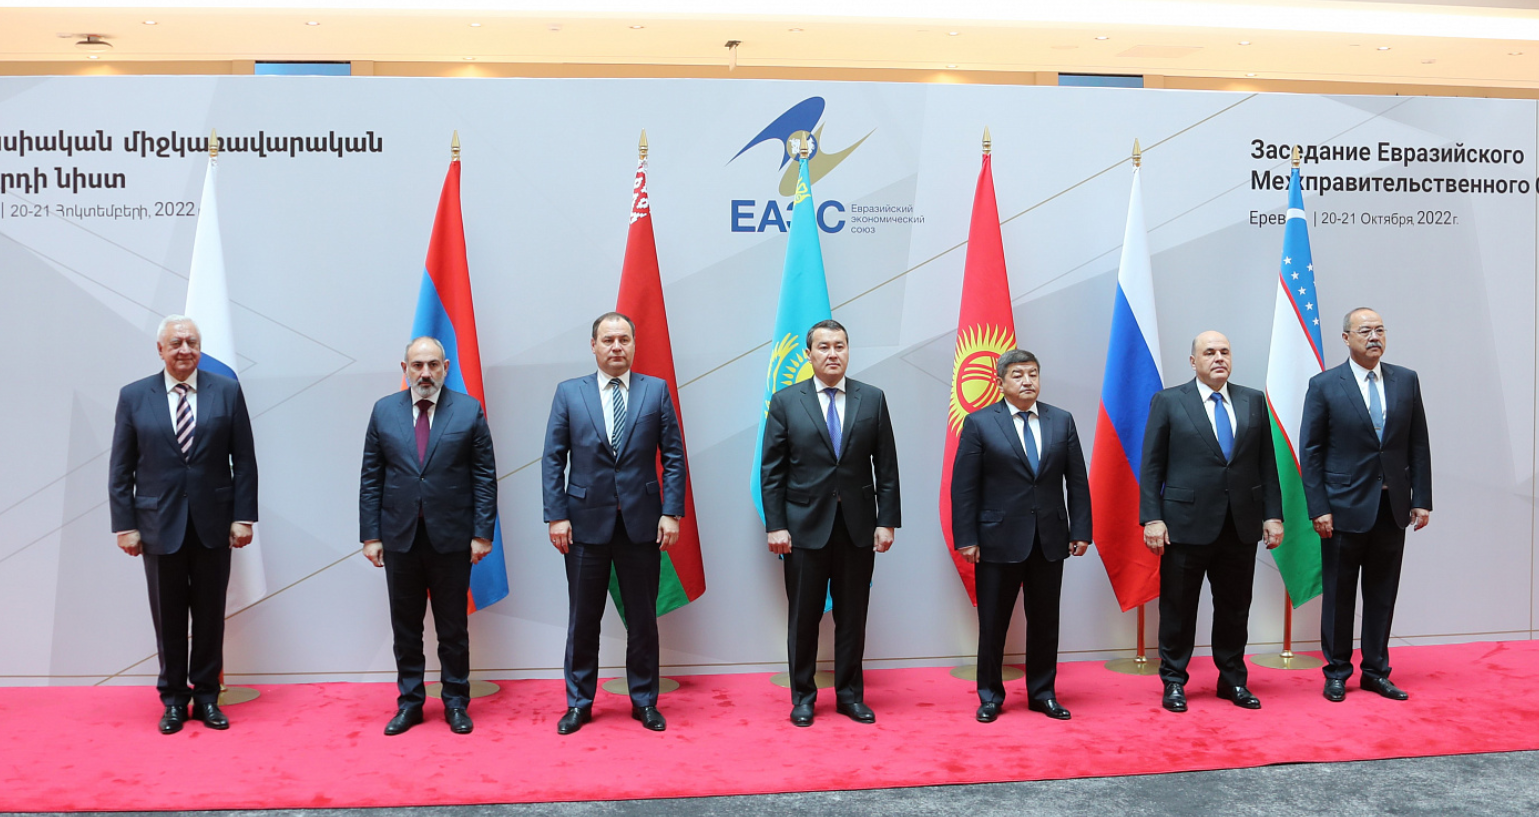 Итоги заседания Евразийского межправительственного совета 20-21 октября 2022 г.